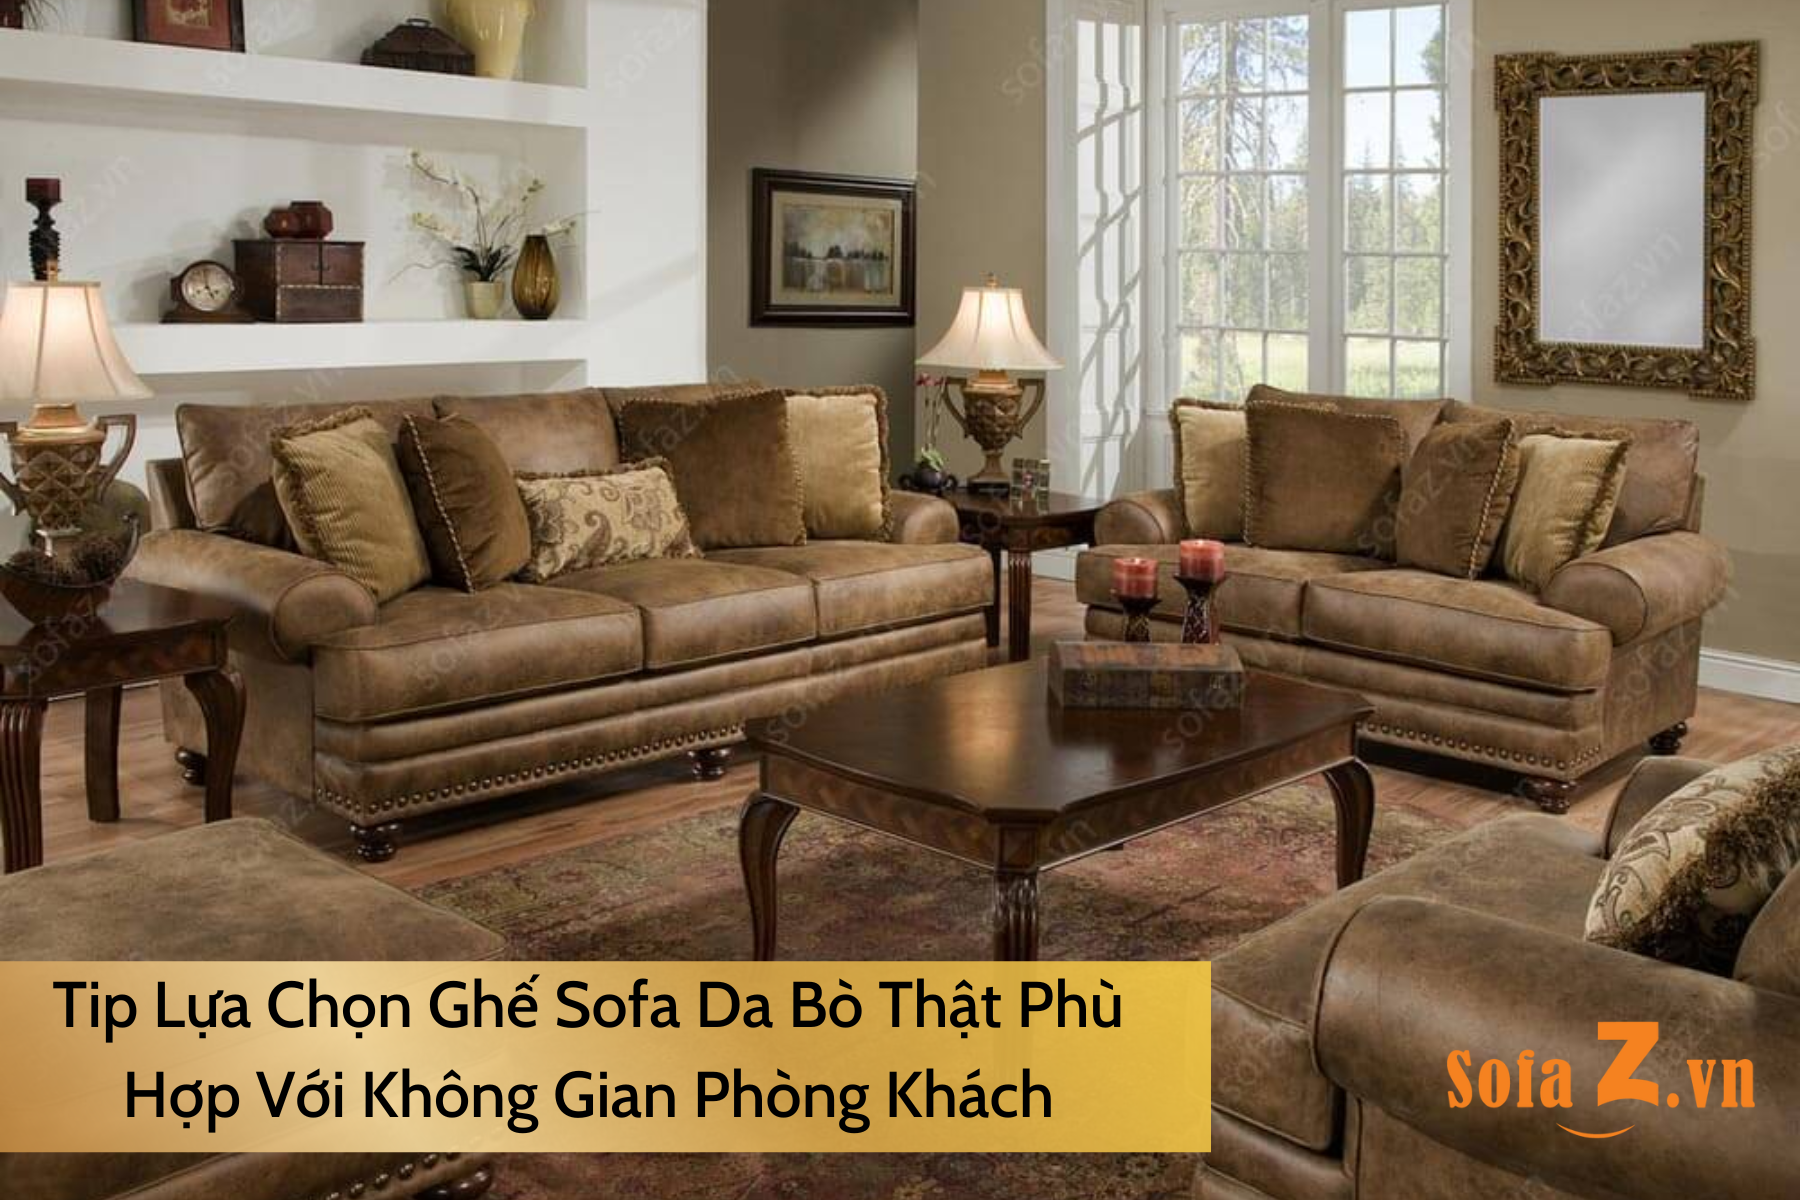 tip-lua-chon-ghe-sofa-da-bo-that-phu-hop-voi-khong-gian-phong-khach.html